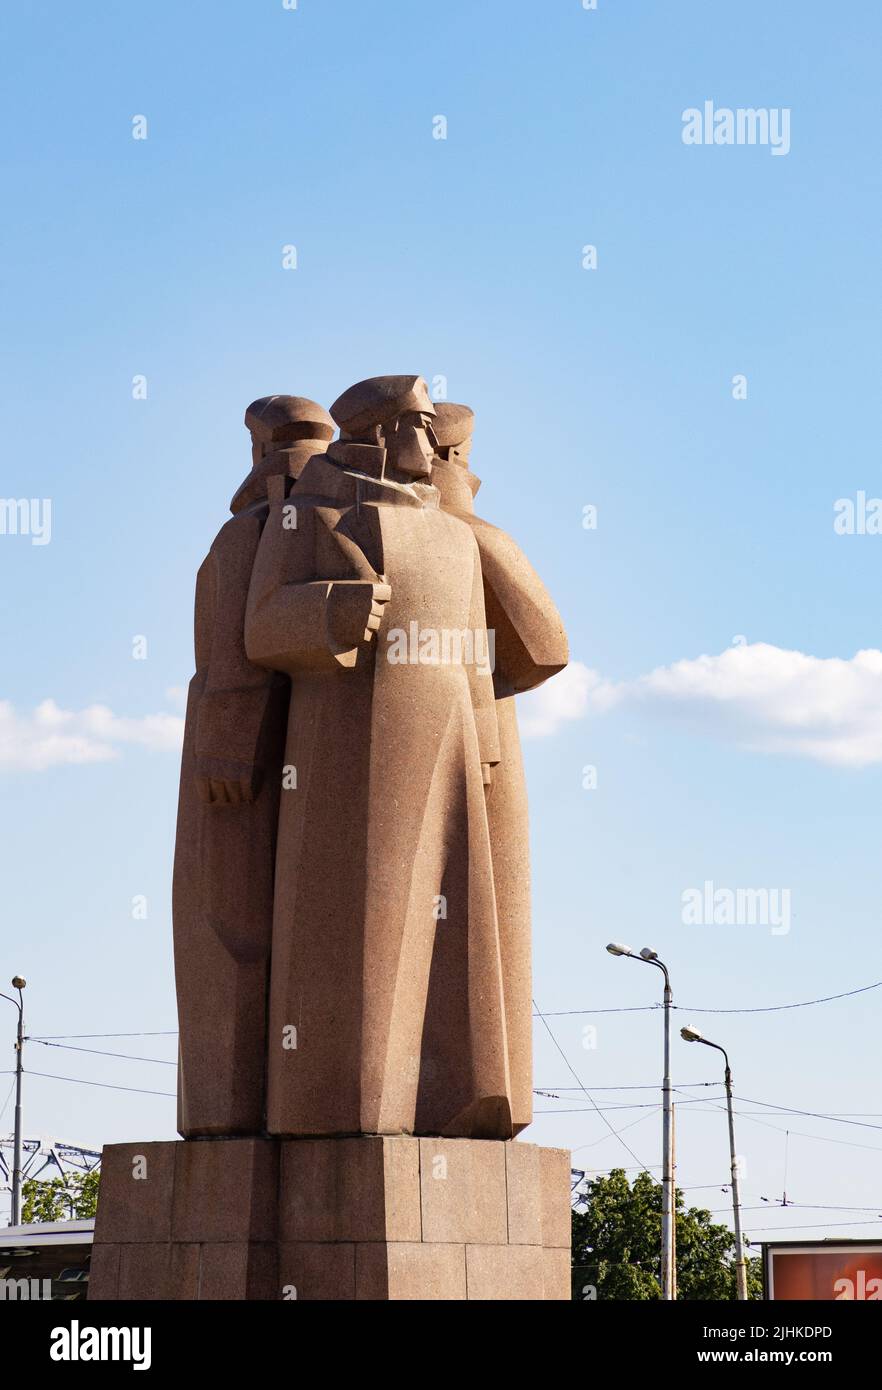 La statua o monumento dei riflemen lettoni - una statua di epoca sovietica nel centro di riga, Lettonia Foto Stock